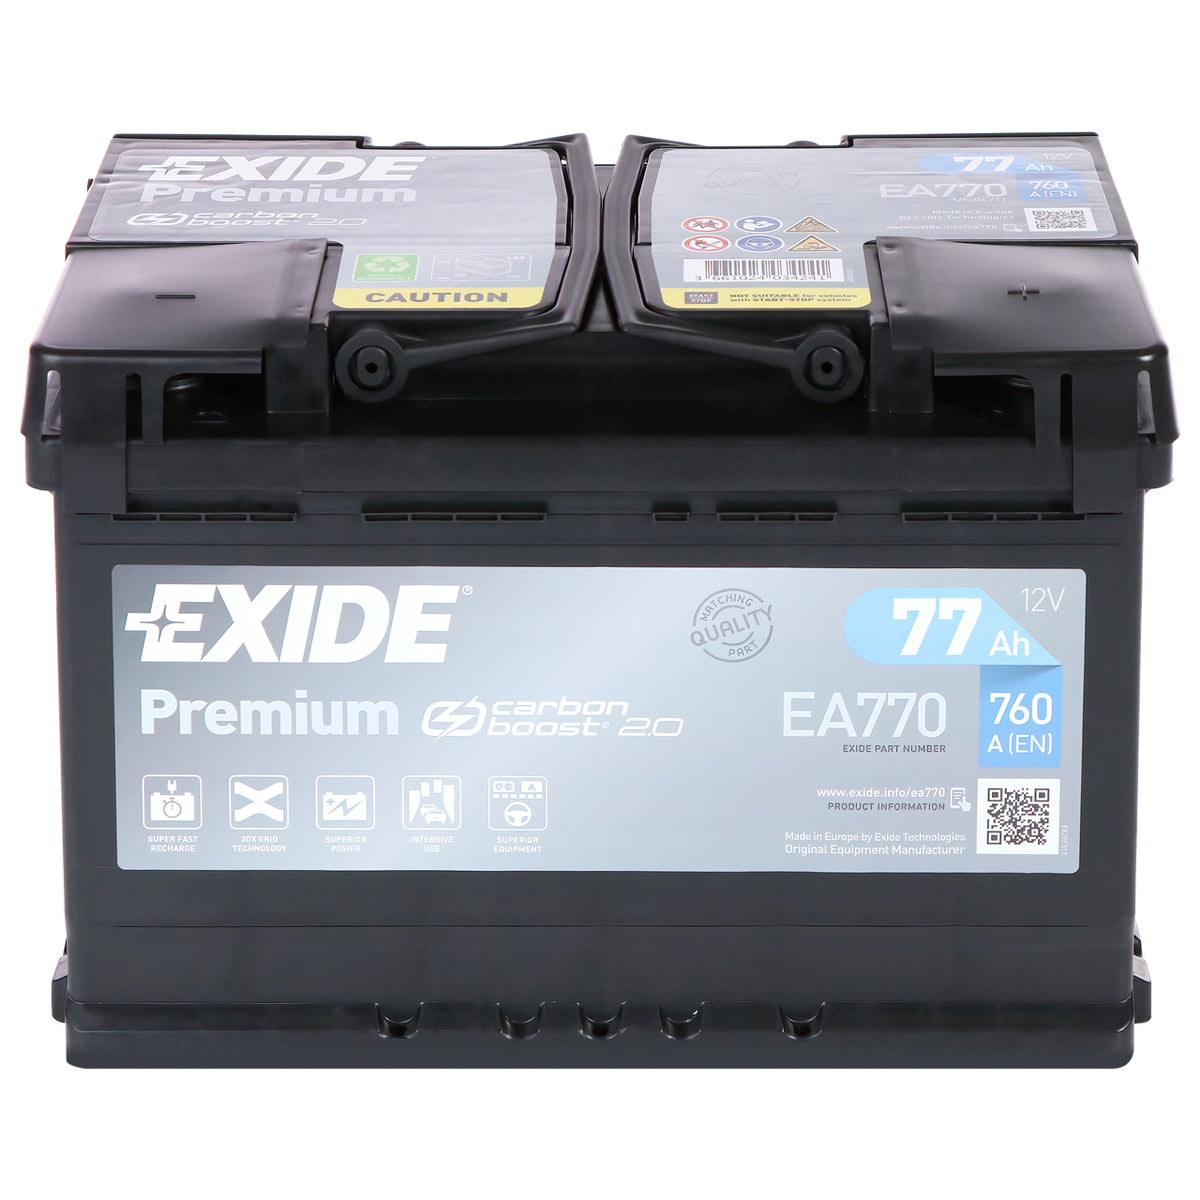 Exide Premium Carbon Boost EA770 12V 77Ah 760A/EN